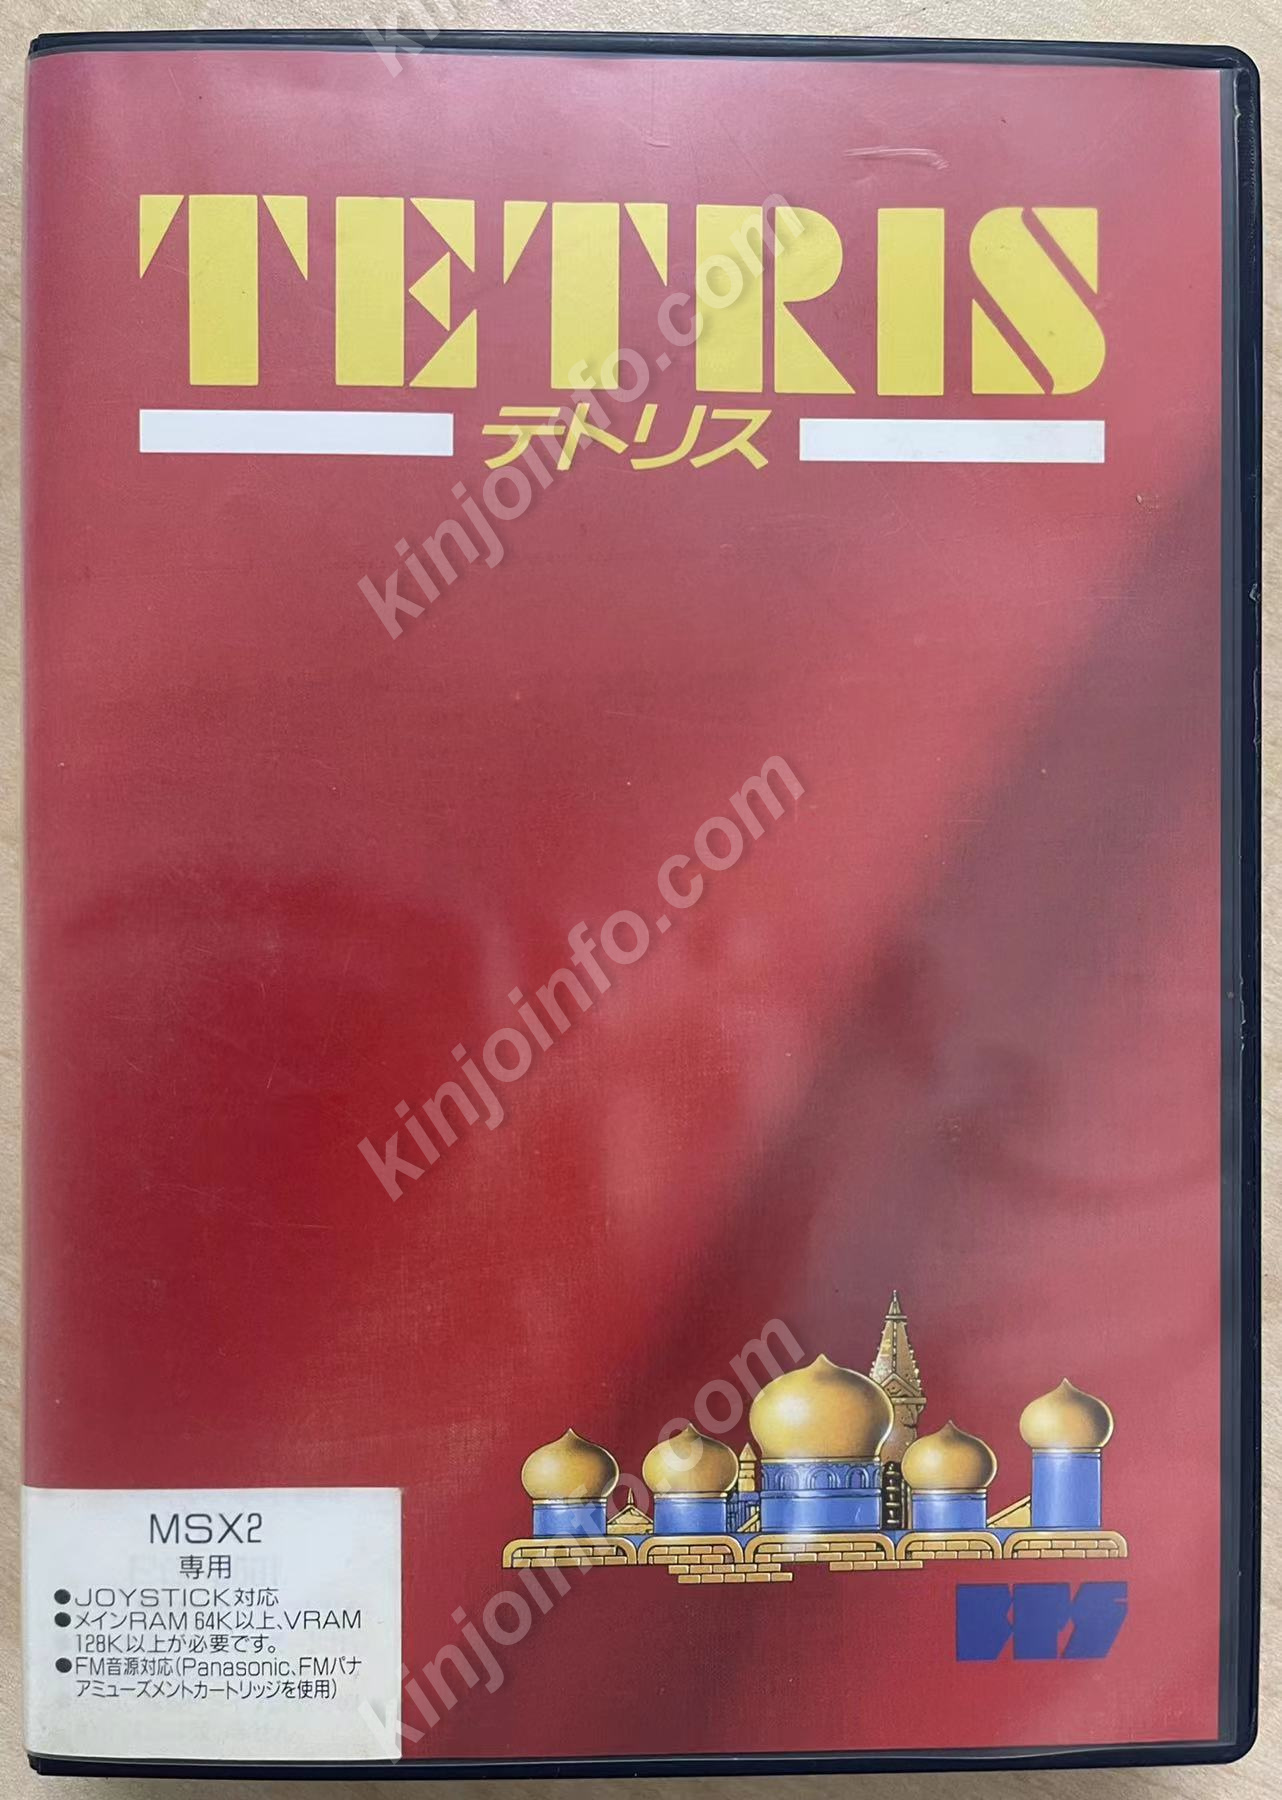 TETRISテトリス MSX2 DISKソフト【新品未使用・MSX2日本版】